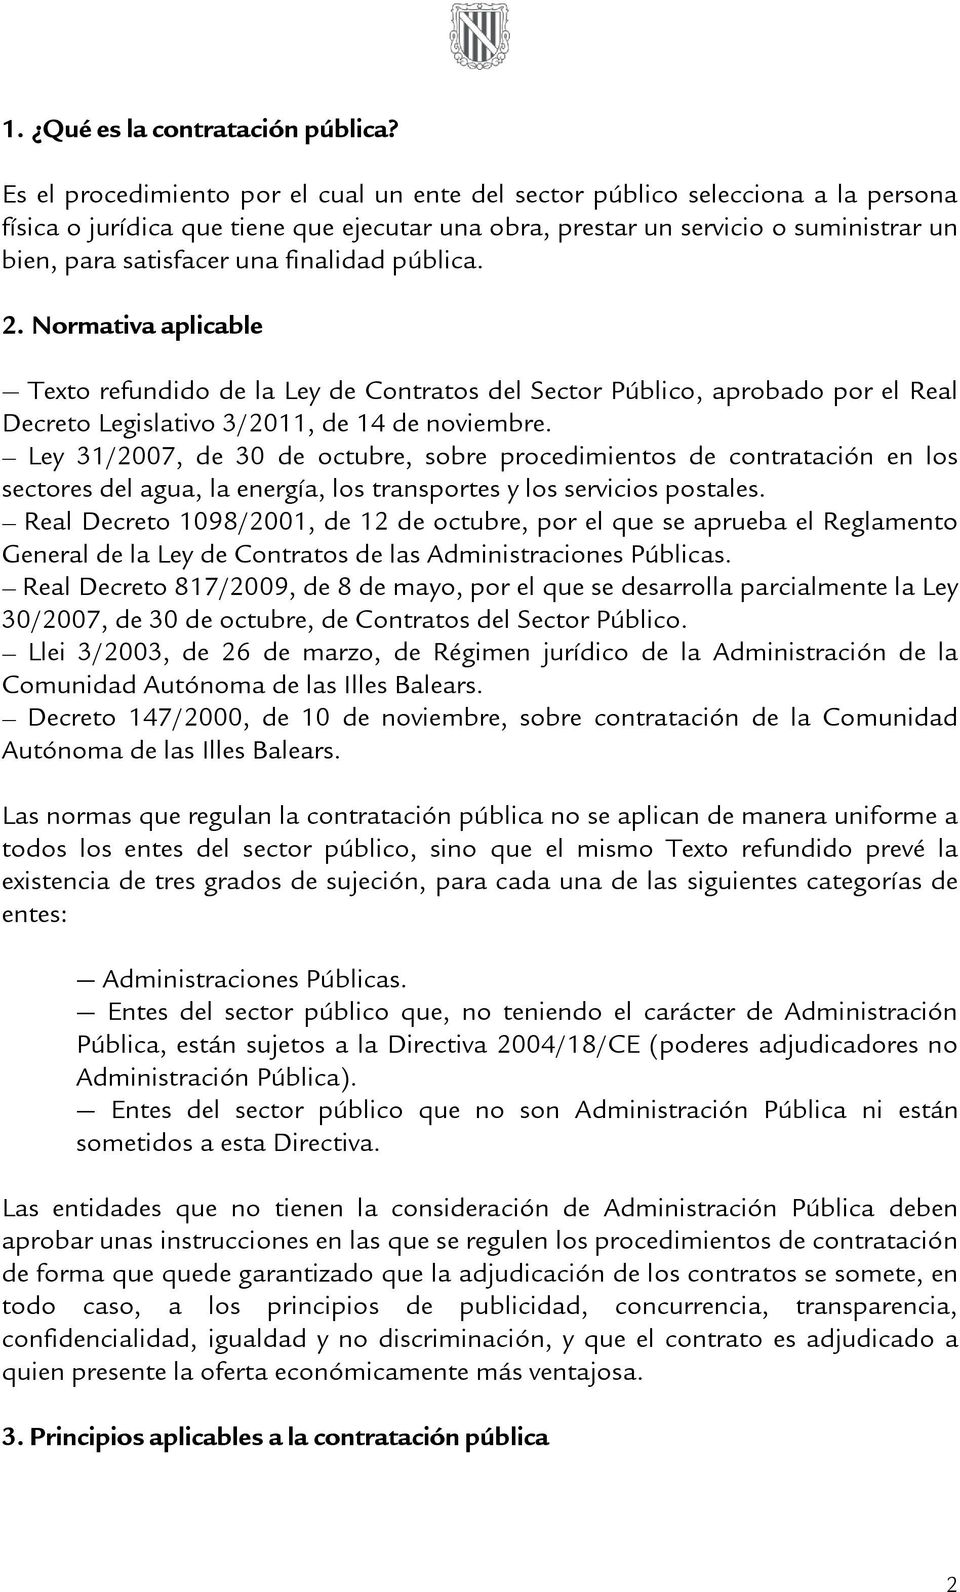 finalidad pública. 2. Normativa aplicable Texto refundido de la Ley de Contratos del Sector Público, aprobado por el Real Decreto Legislativo 3/2011, de 14 de noviembre.